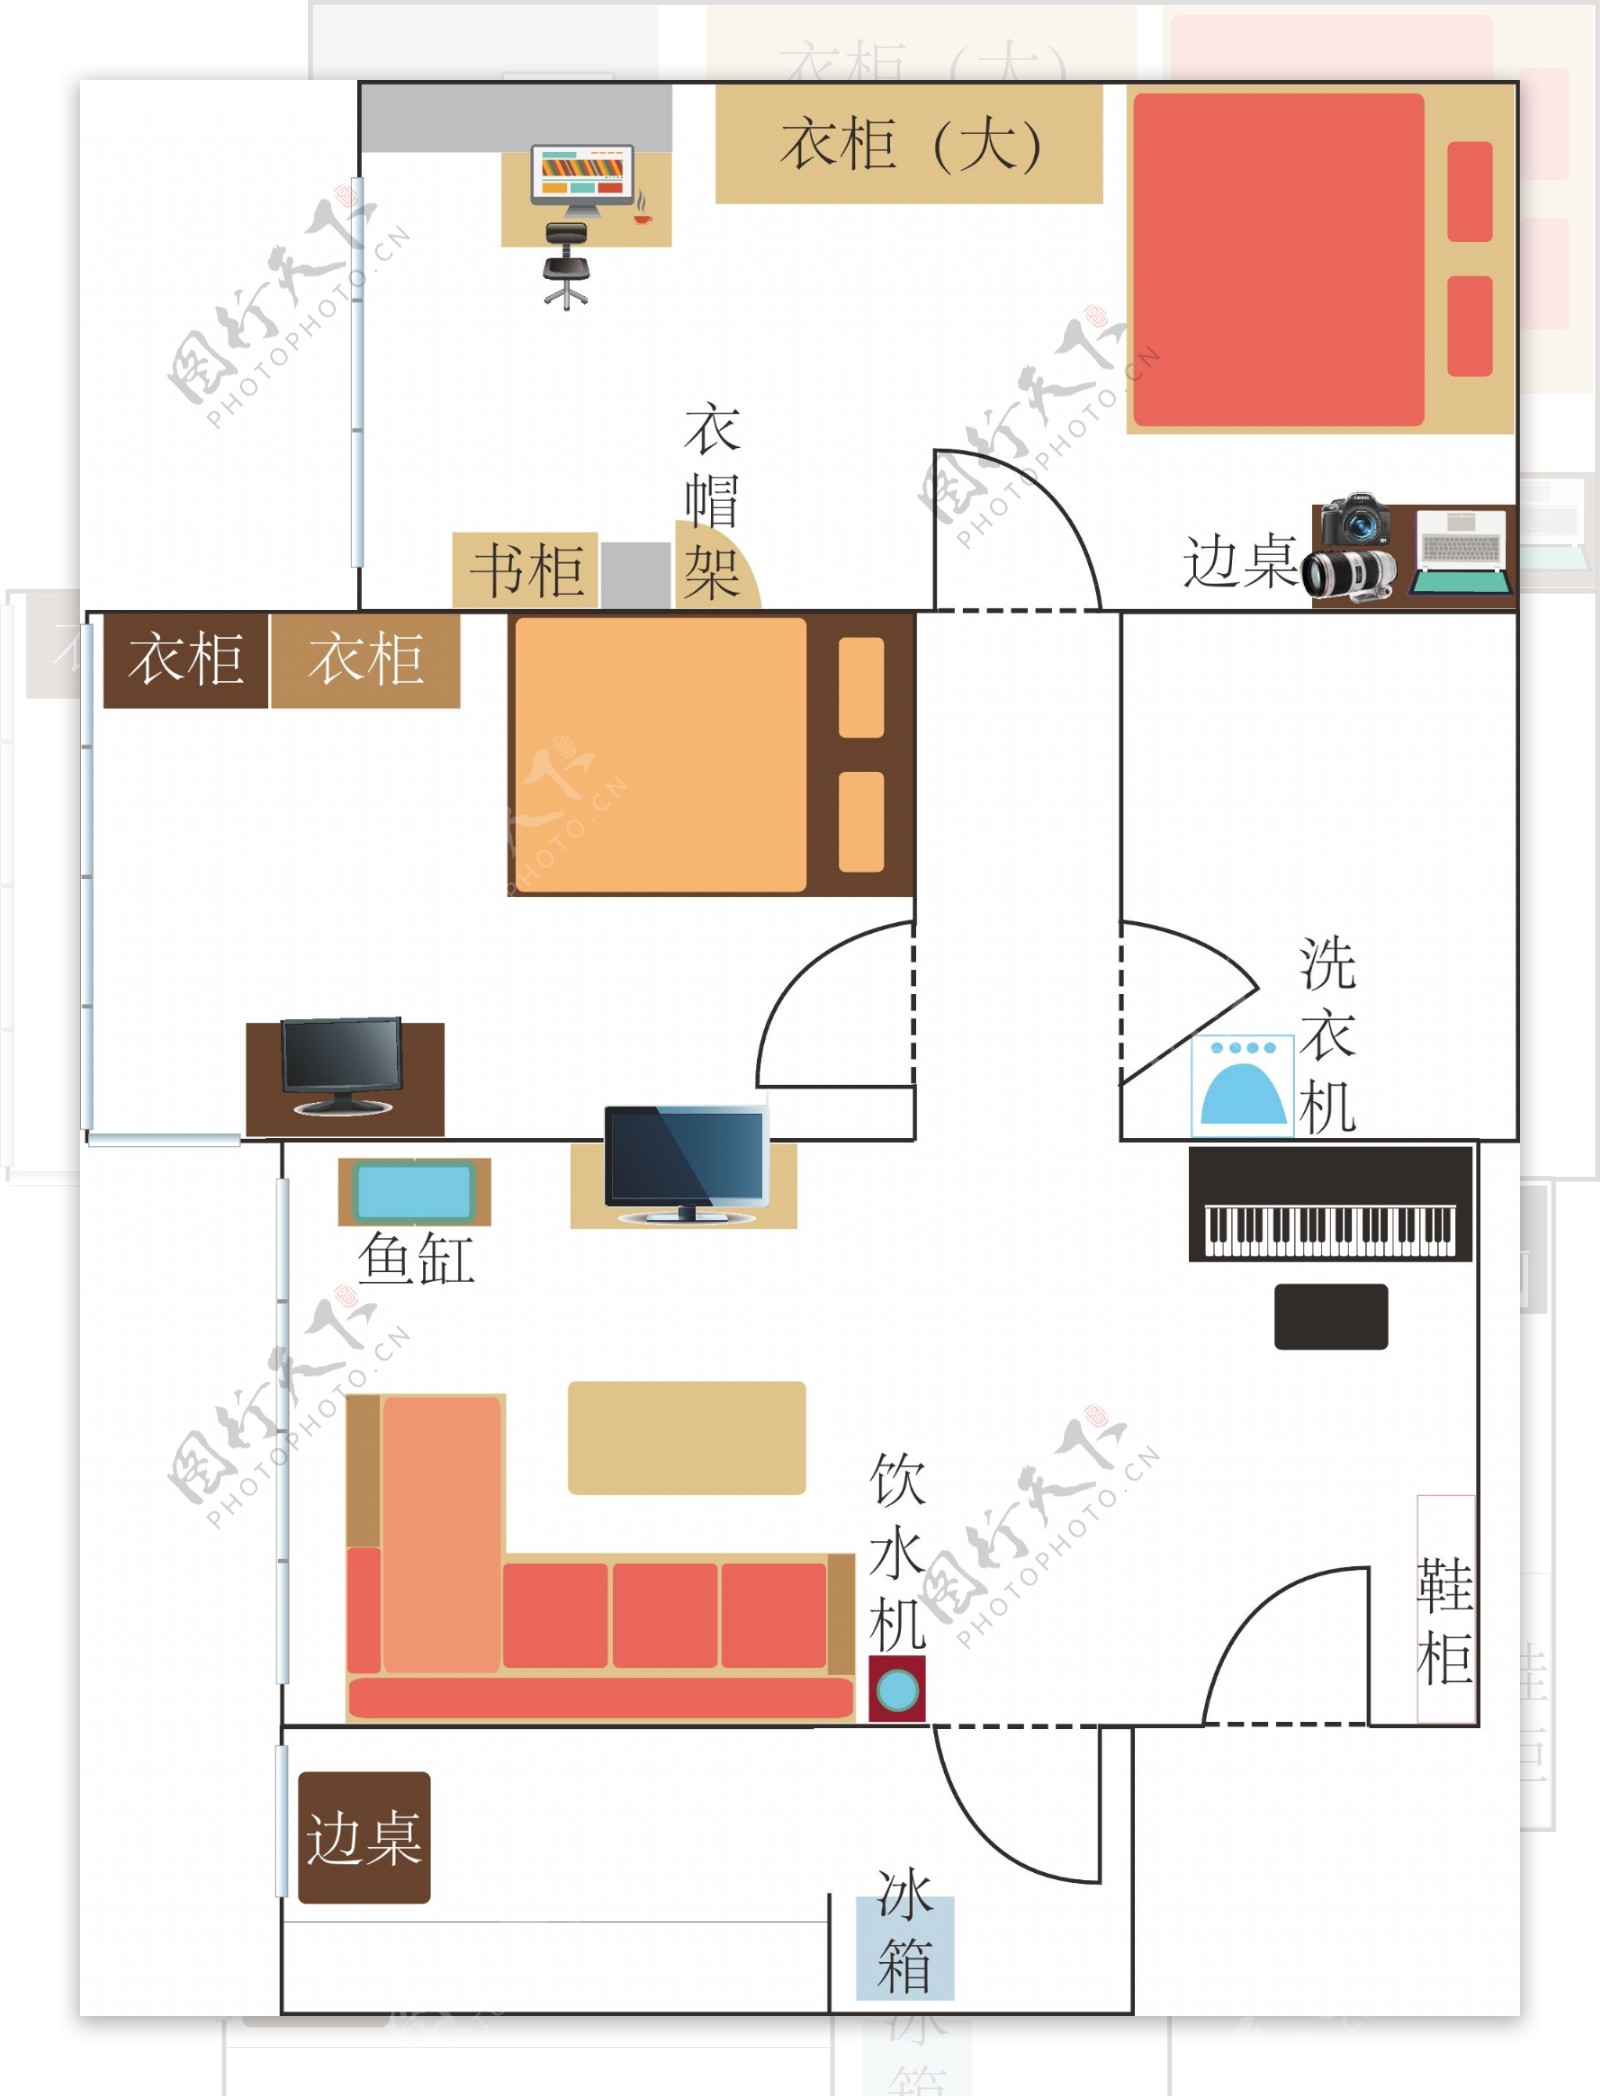 居室户型家具布置平面简易图